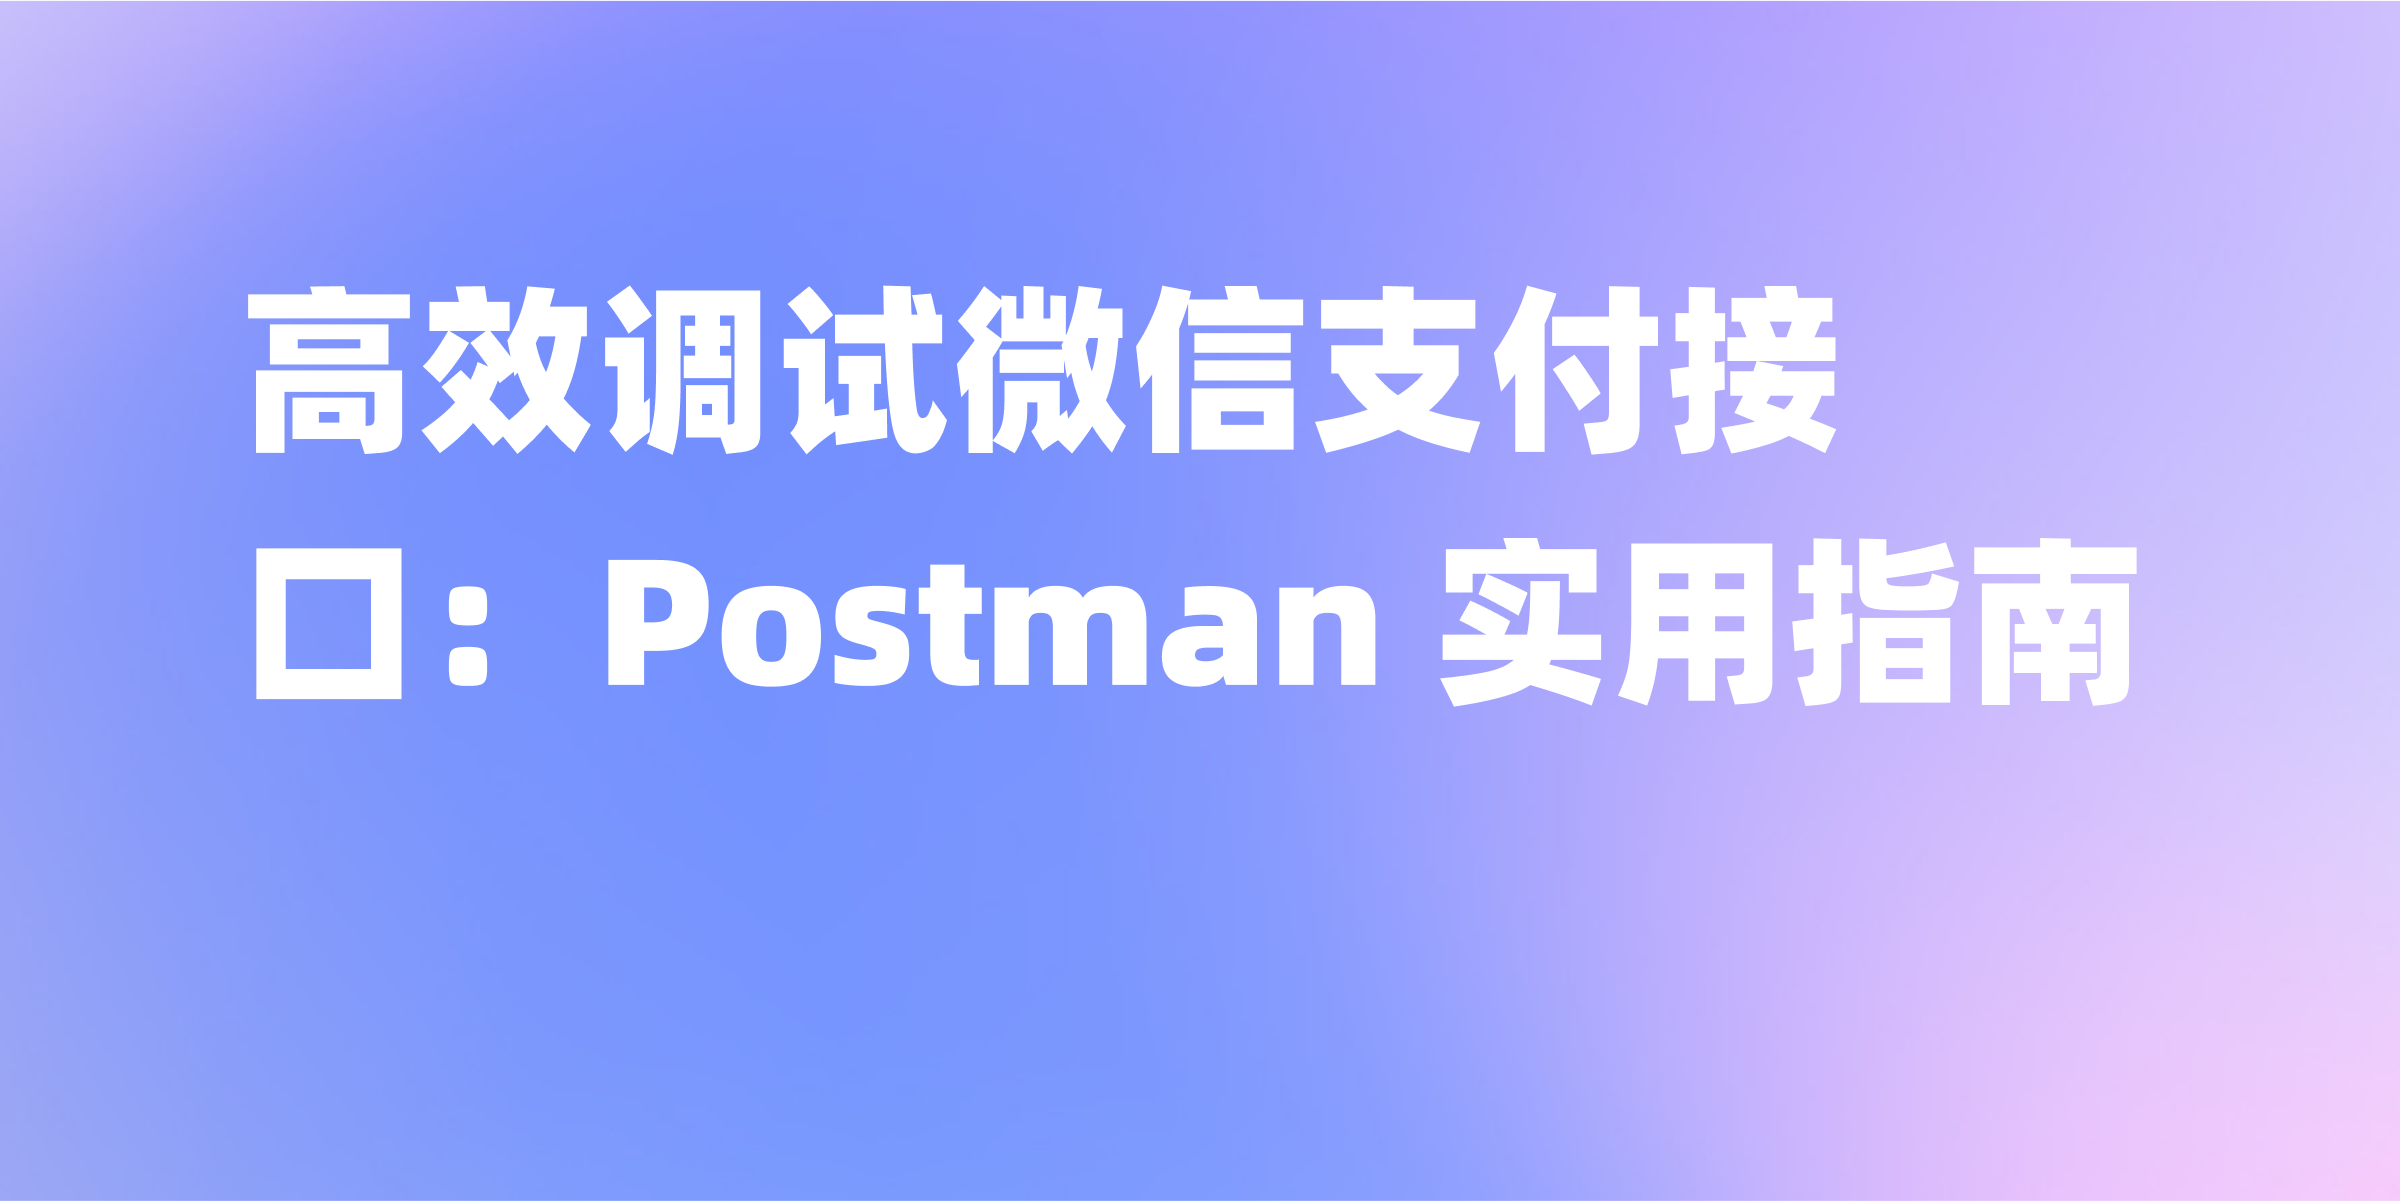 如何使用 Postman 调试微信支付接口